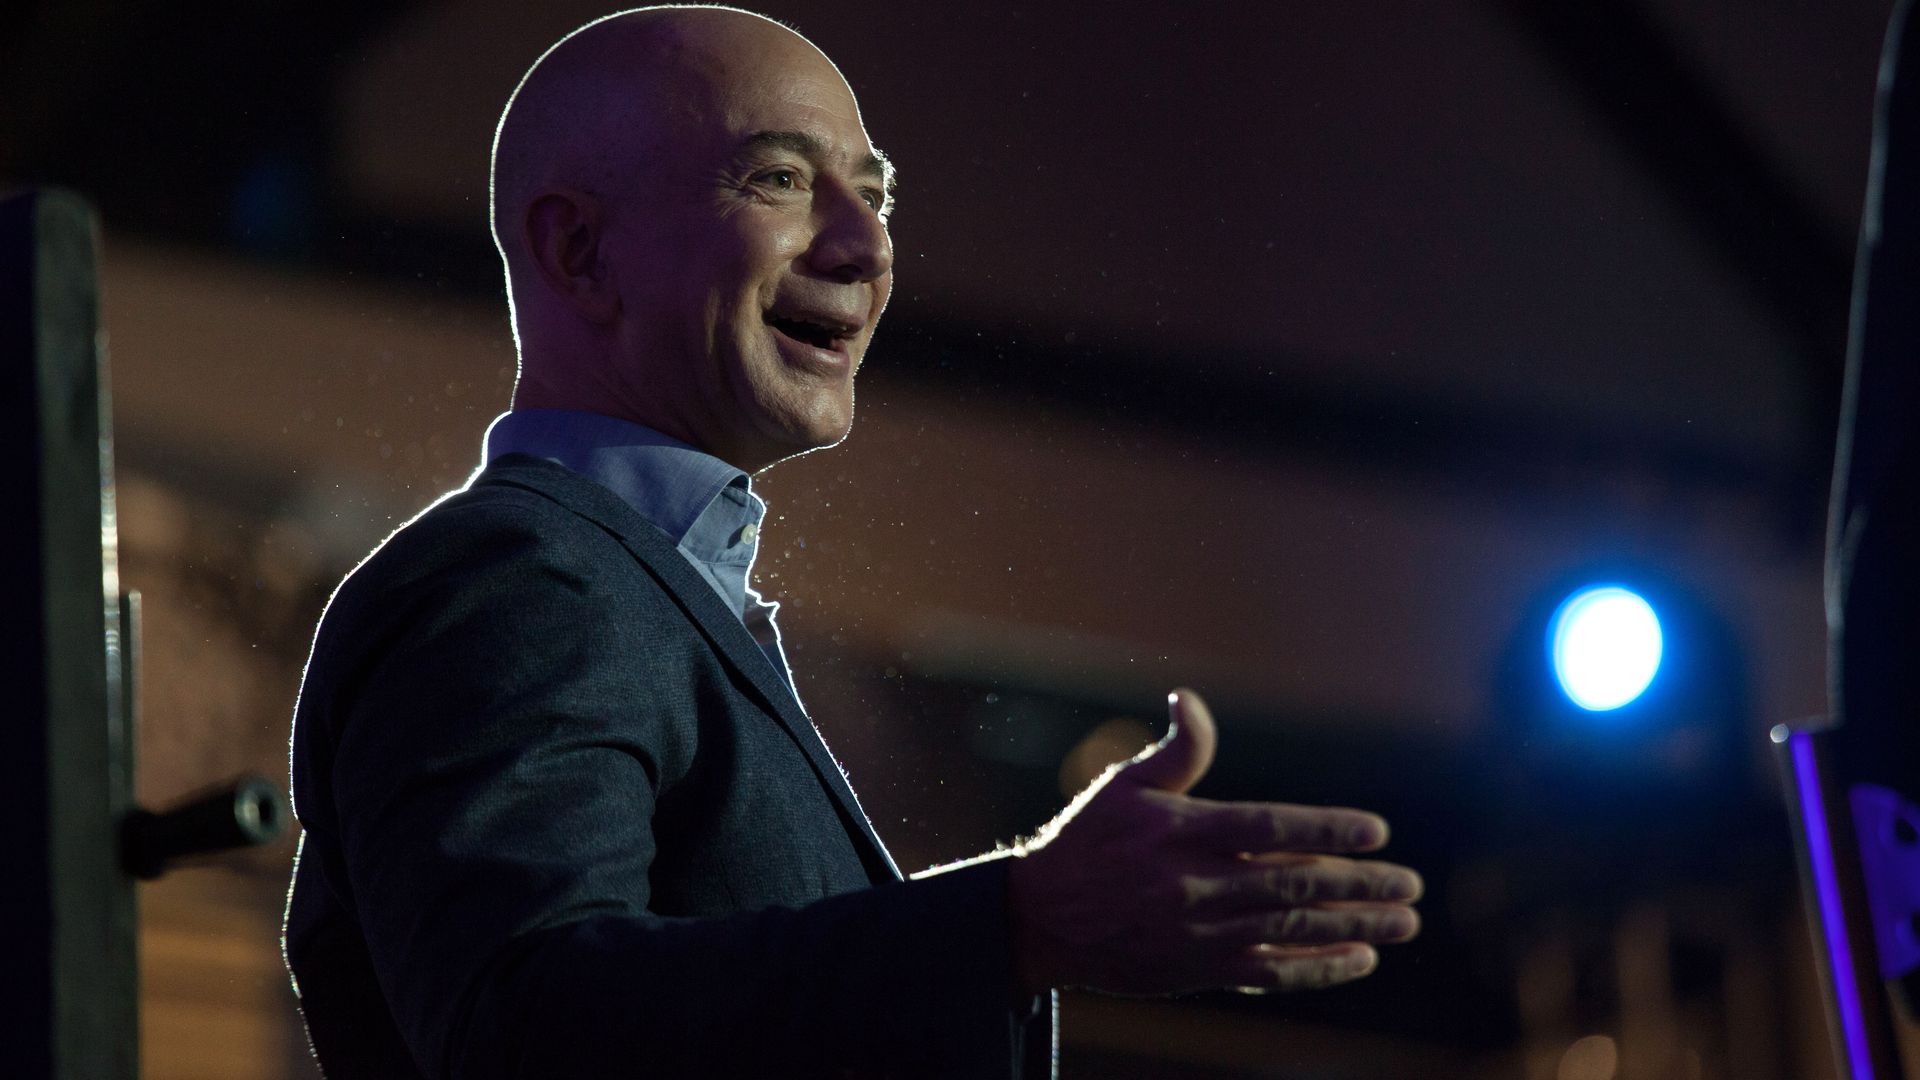 Amazon CEO Jeff Bezos smiling.